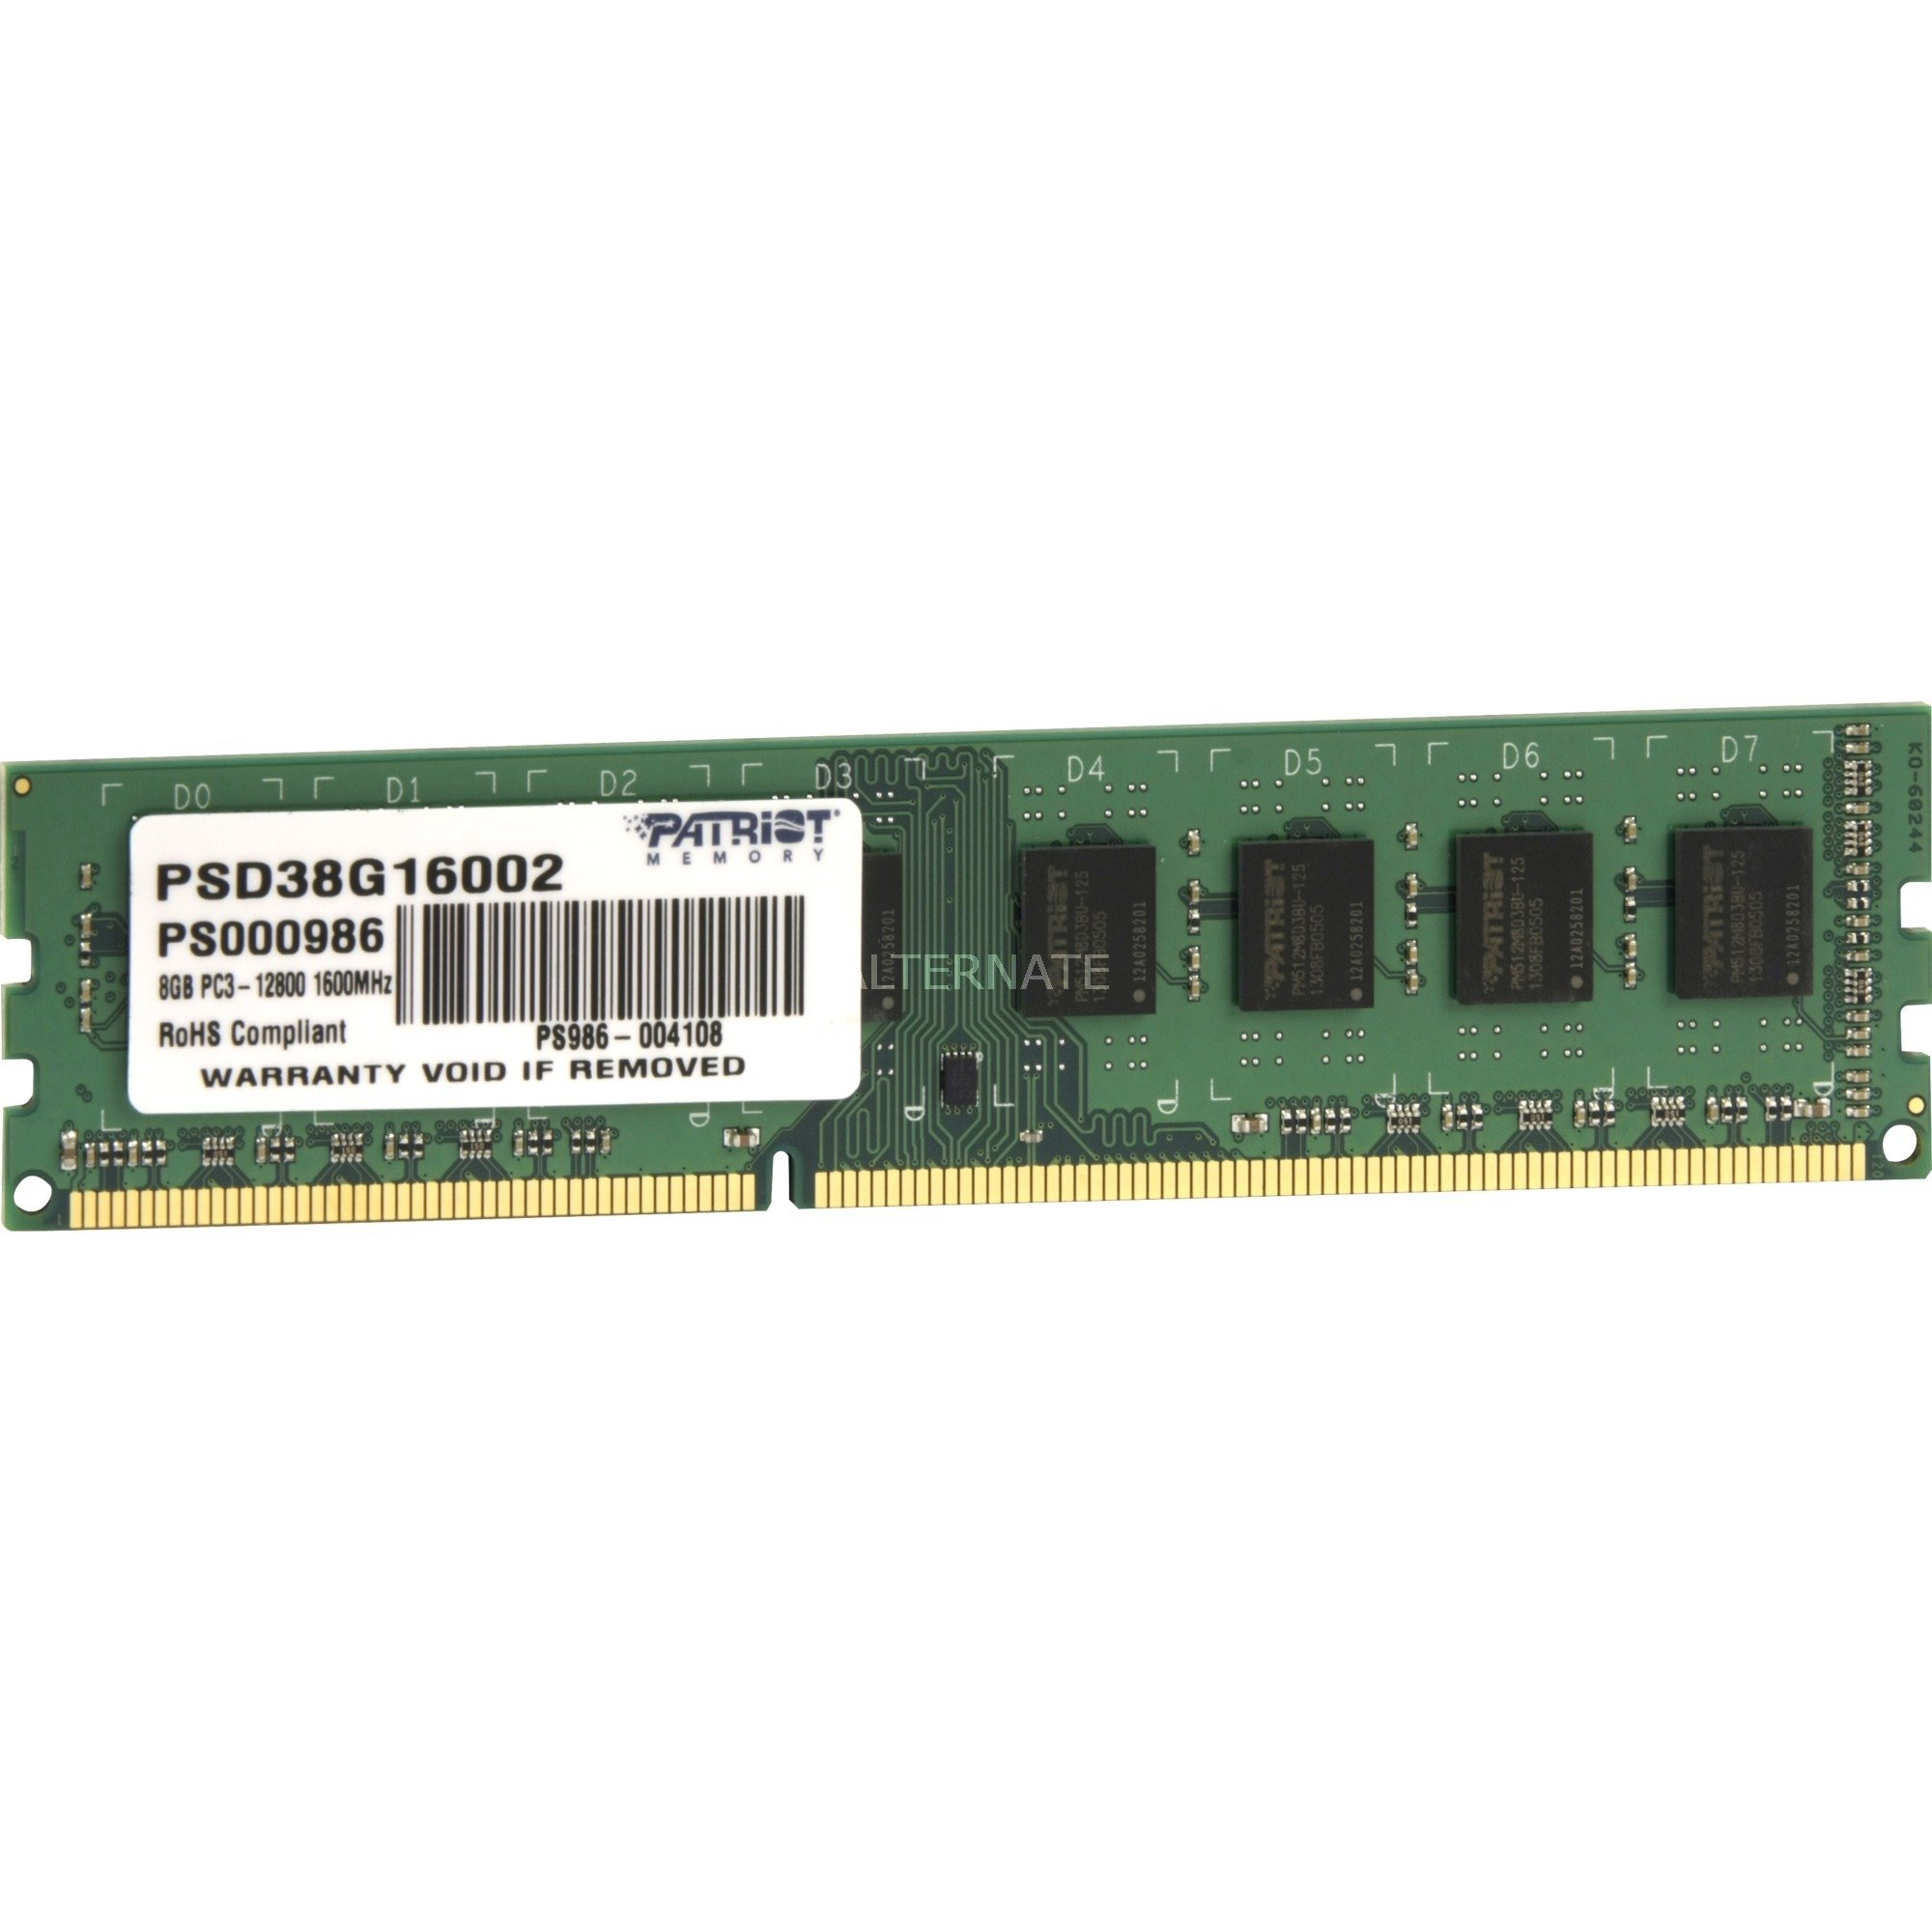 DDR3 8GB PC3-12800 (1600MHz) DIMM modu? pami?ci, Pami?c operacyjna